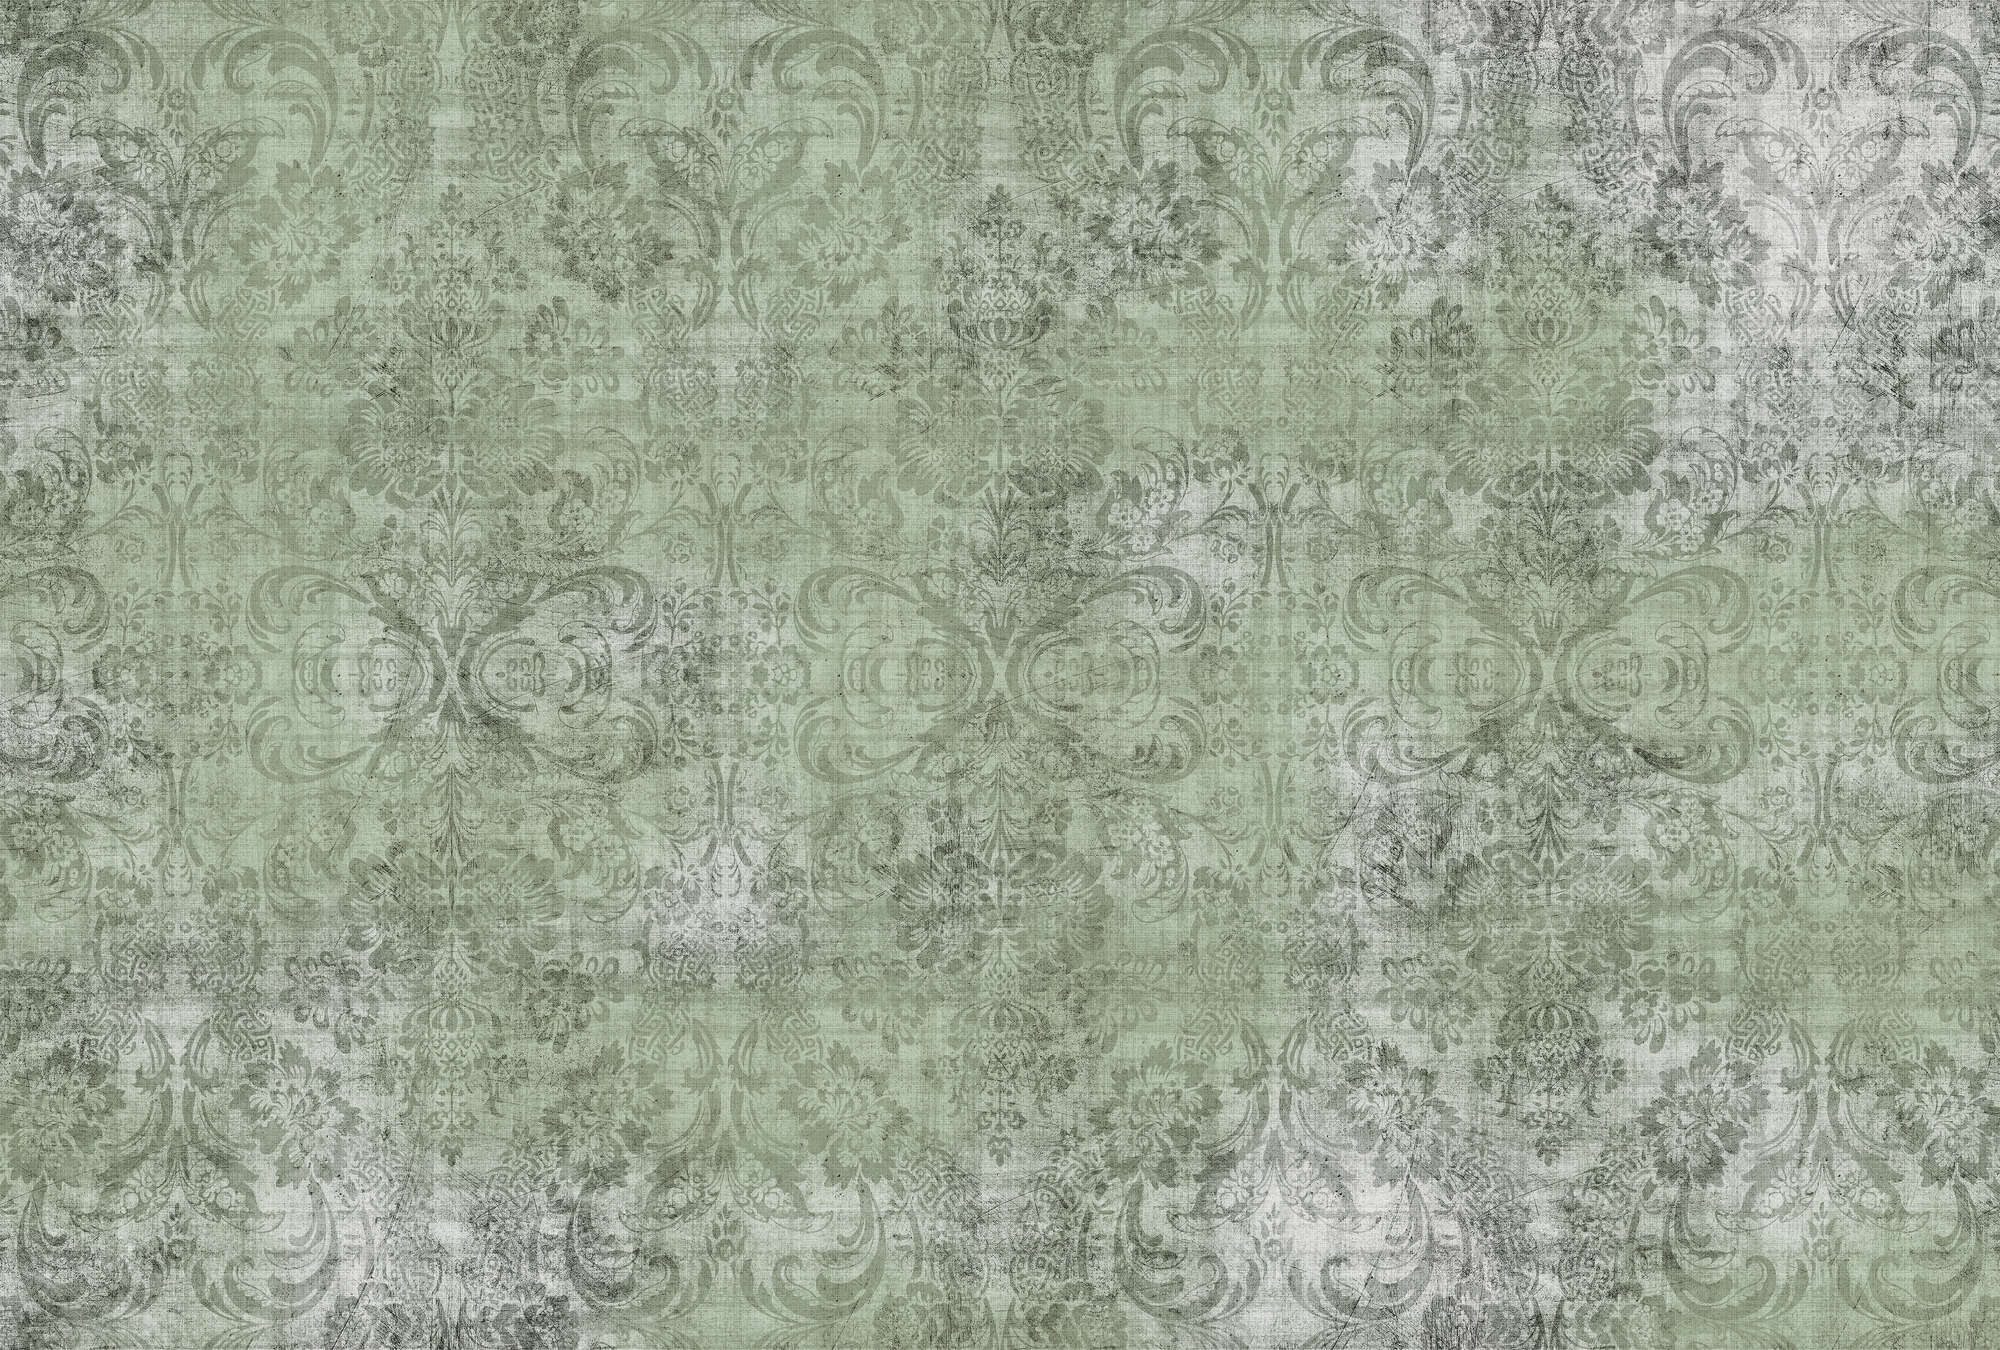             Vecchio damasco 2 - Ornamenti su carta da parati verde-fotografata - struttura in lino naturale - struttura verde in tessuto non tessuto
        